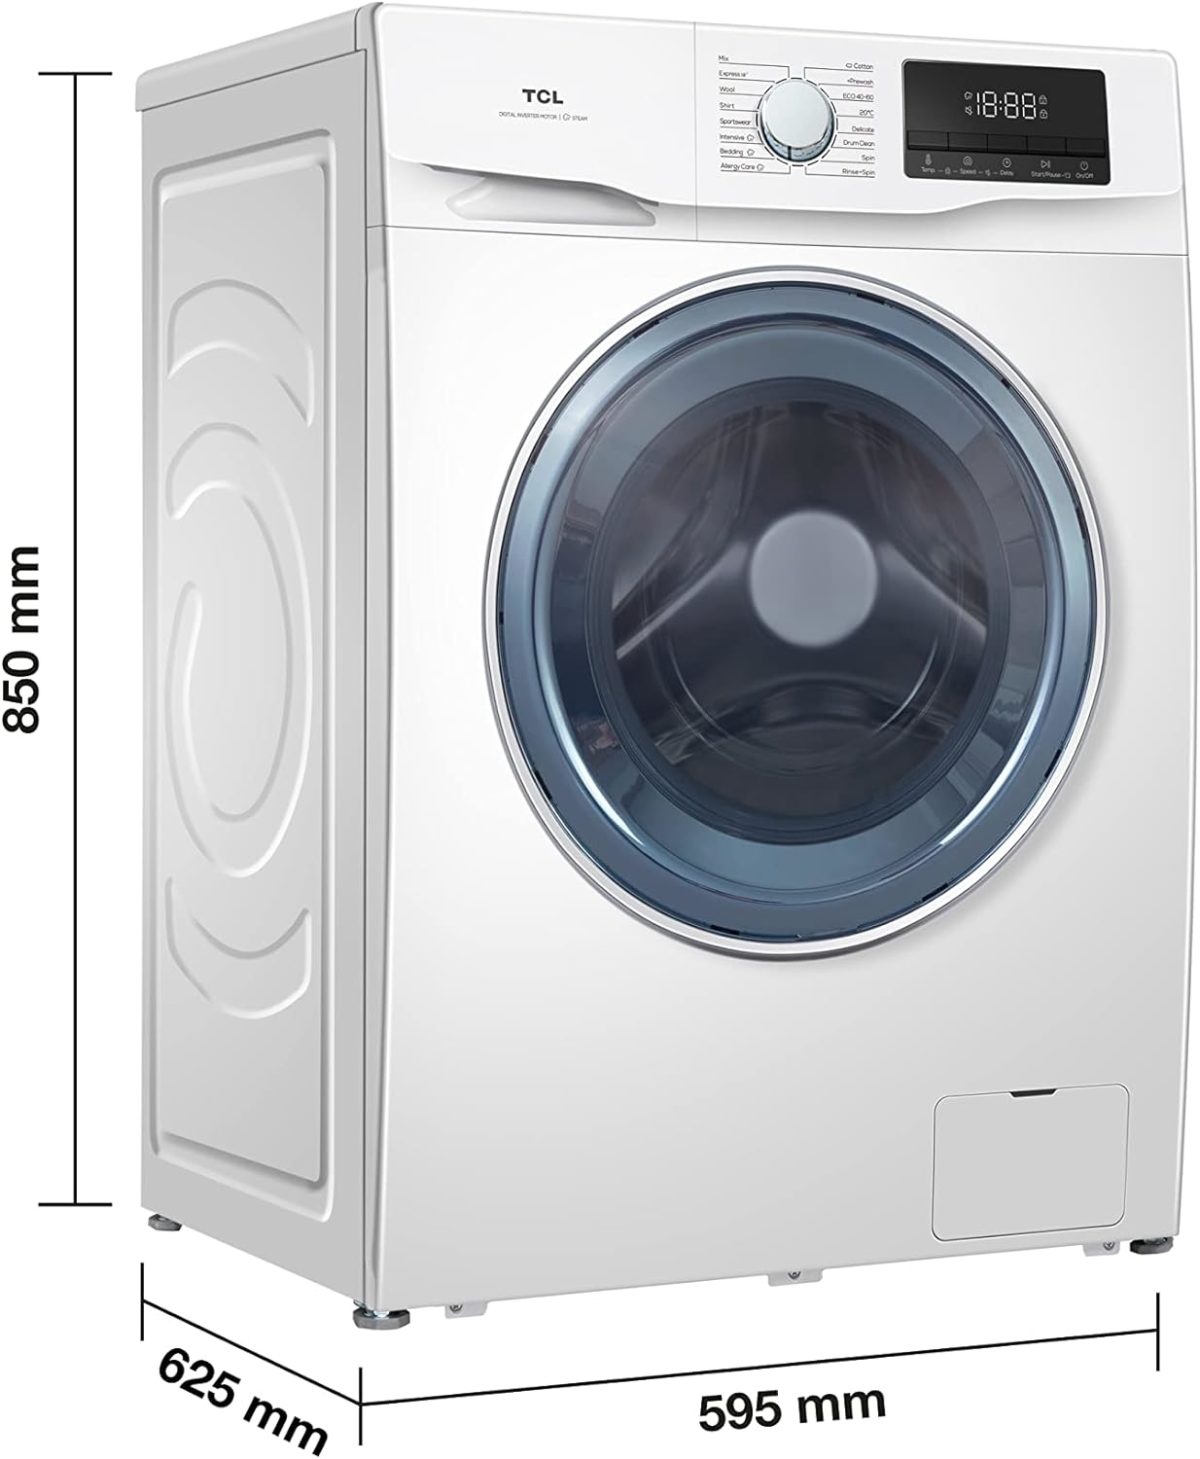 TCL FF1014WC0, una lavadora con tambor de 10 kg y diseño especial para lavar con menos arrugas 7